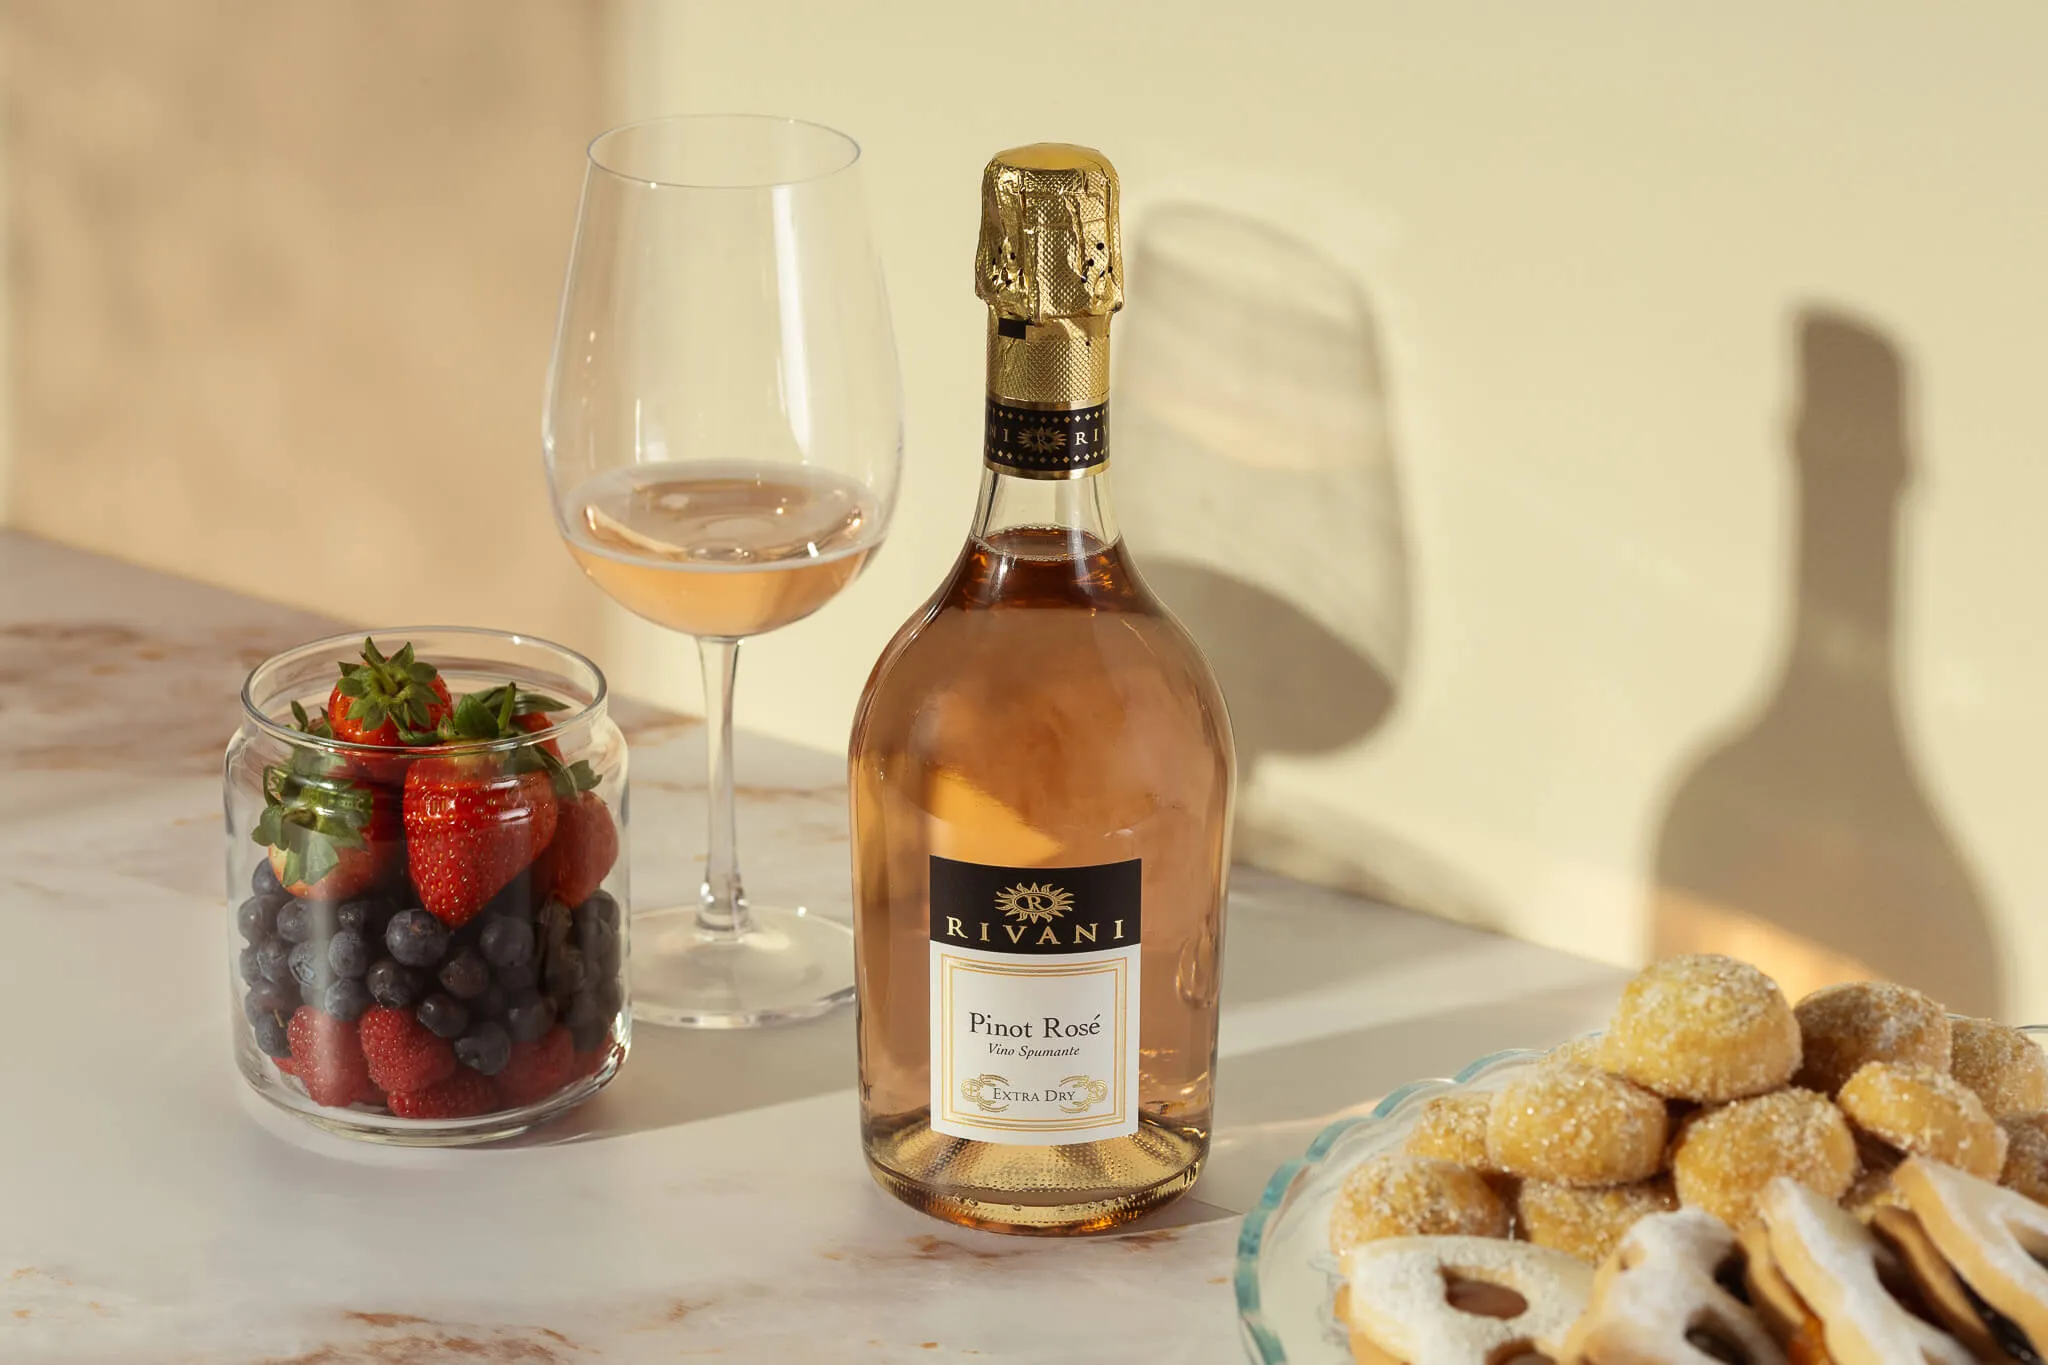 Bottiglia di Vino - Pinot Rosé Rivani - Schenk Italia